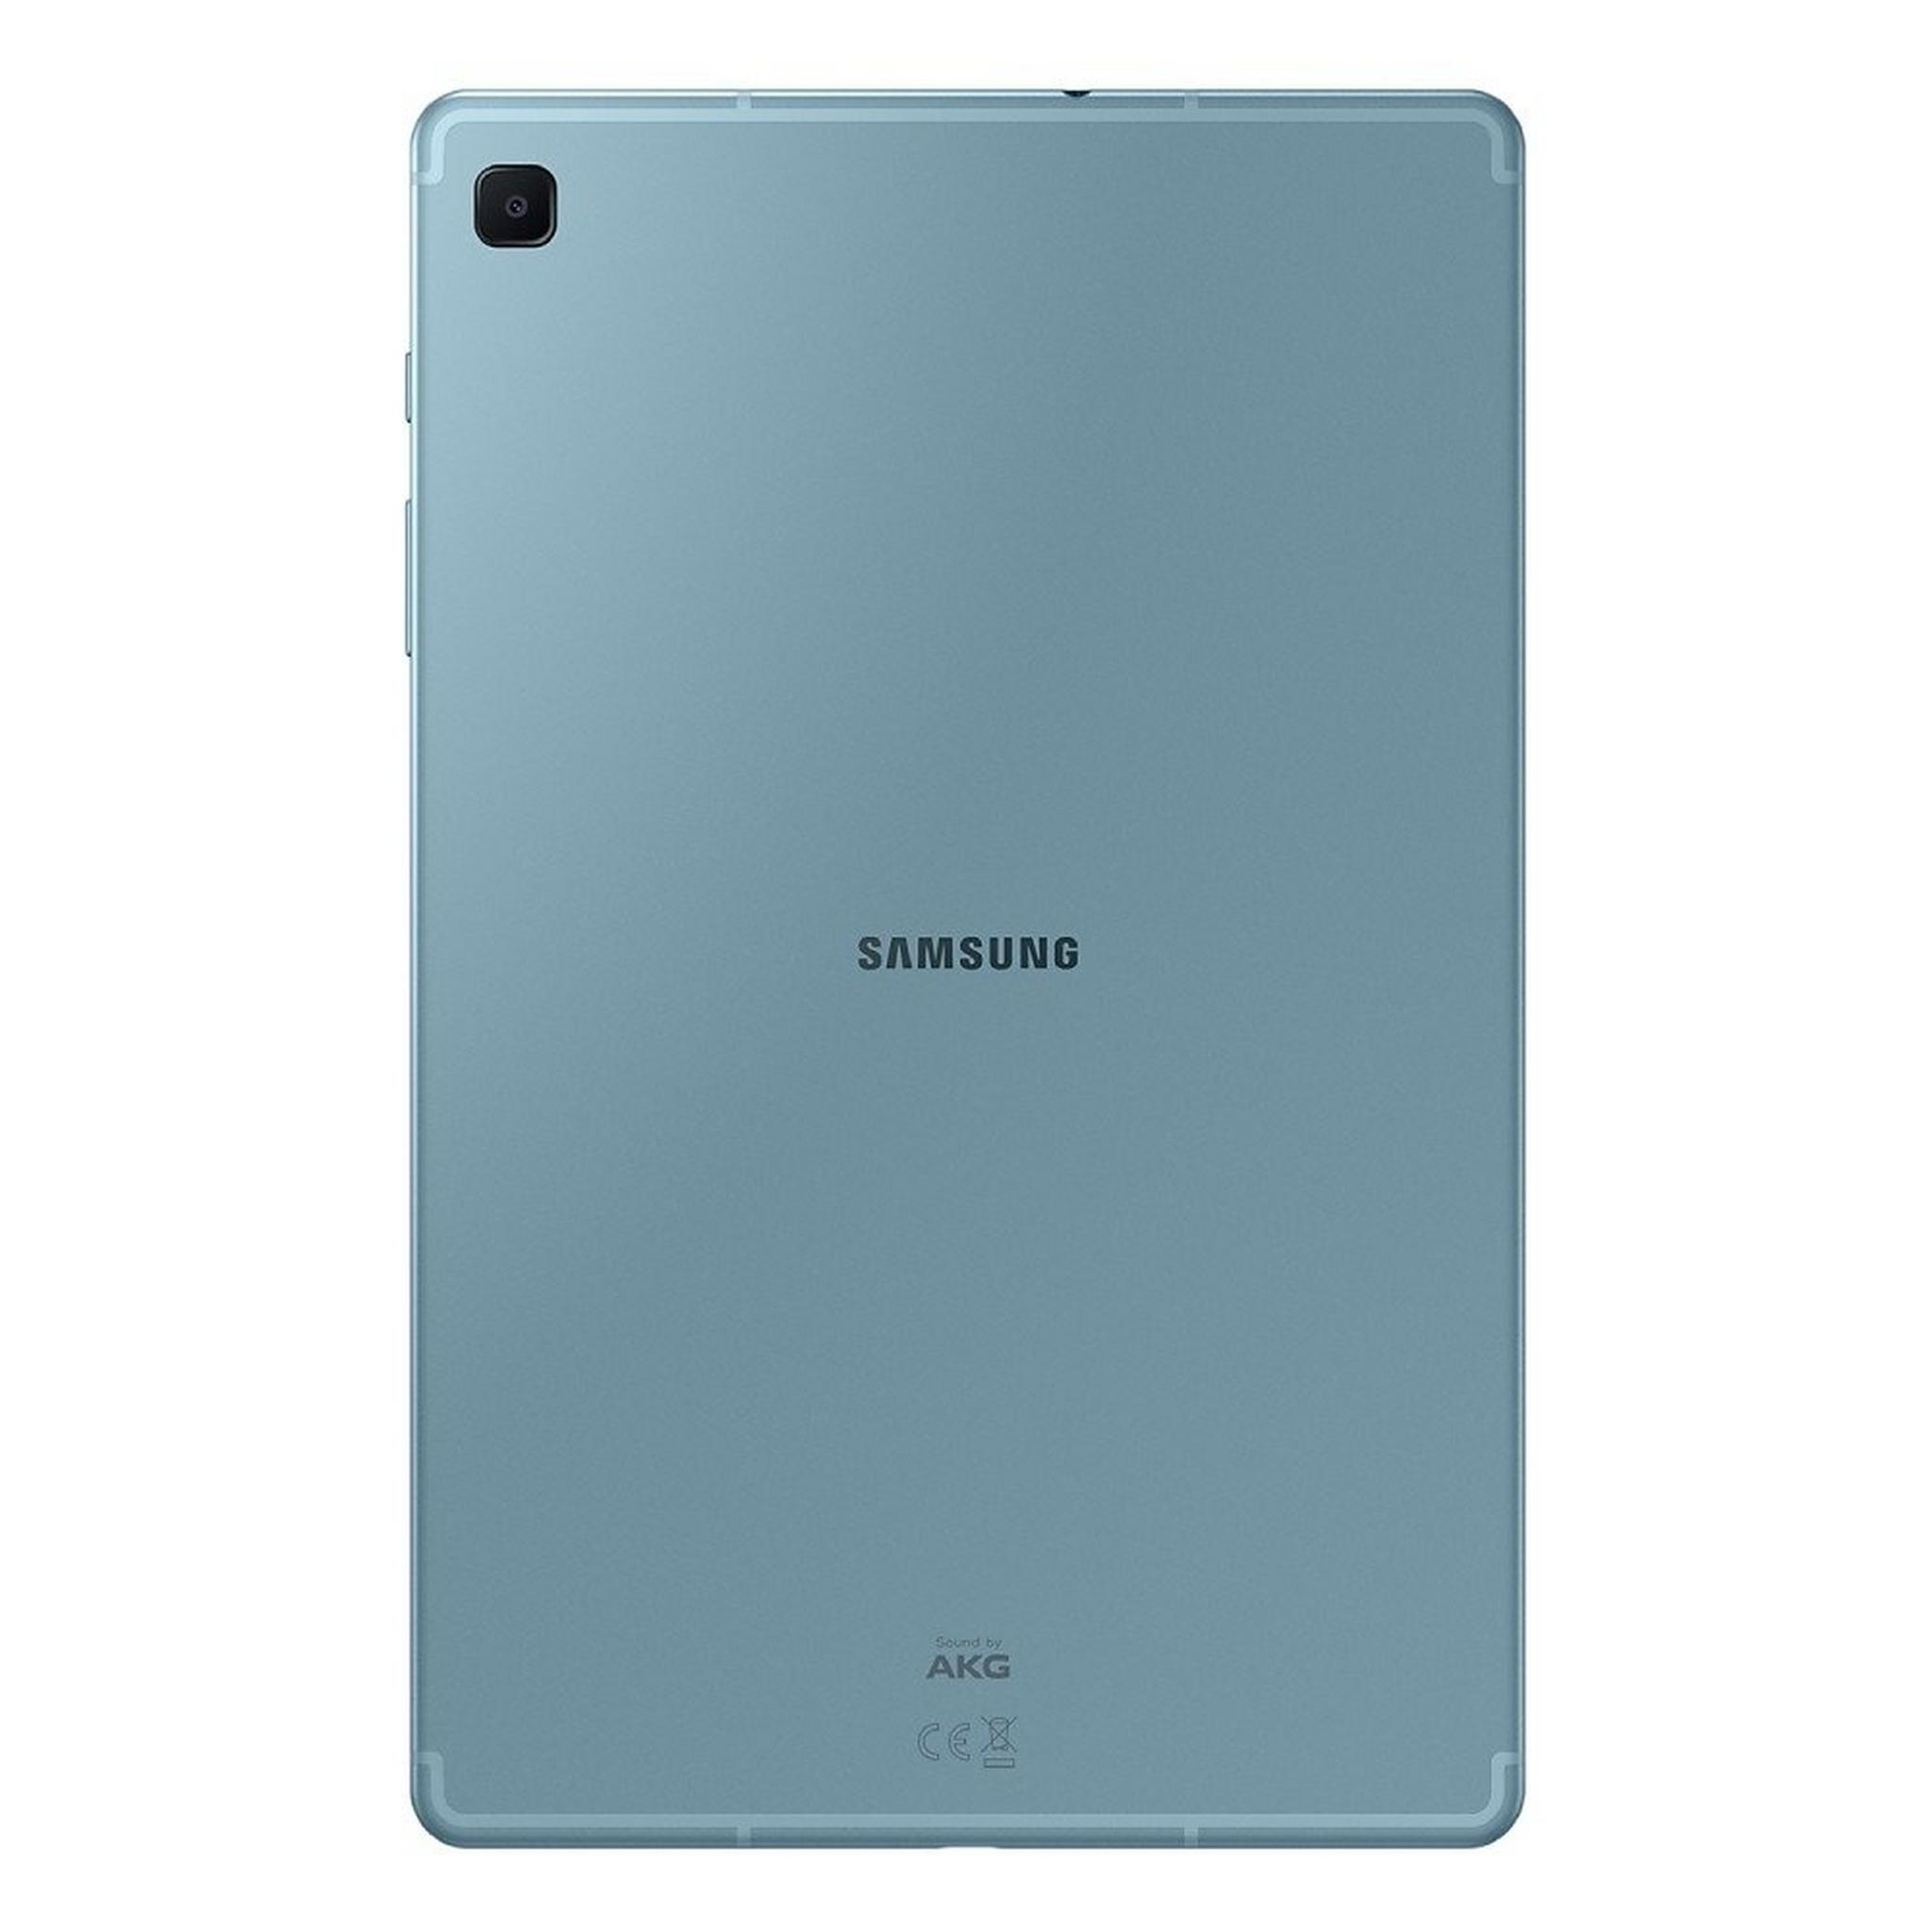 Samsung Galaxy TAB S6 Lite (2022) 128GB, 10.4-inch Wi-Fi Tablet - Blue